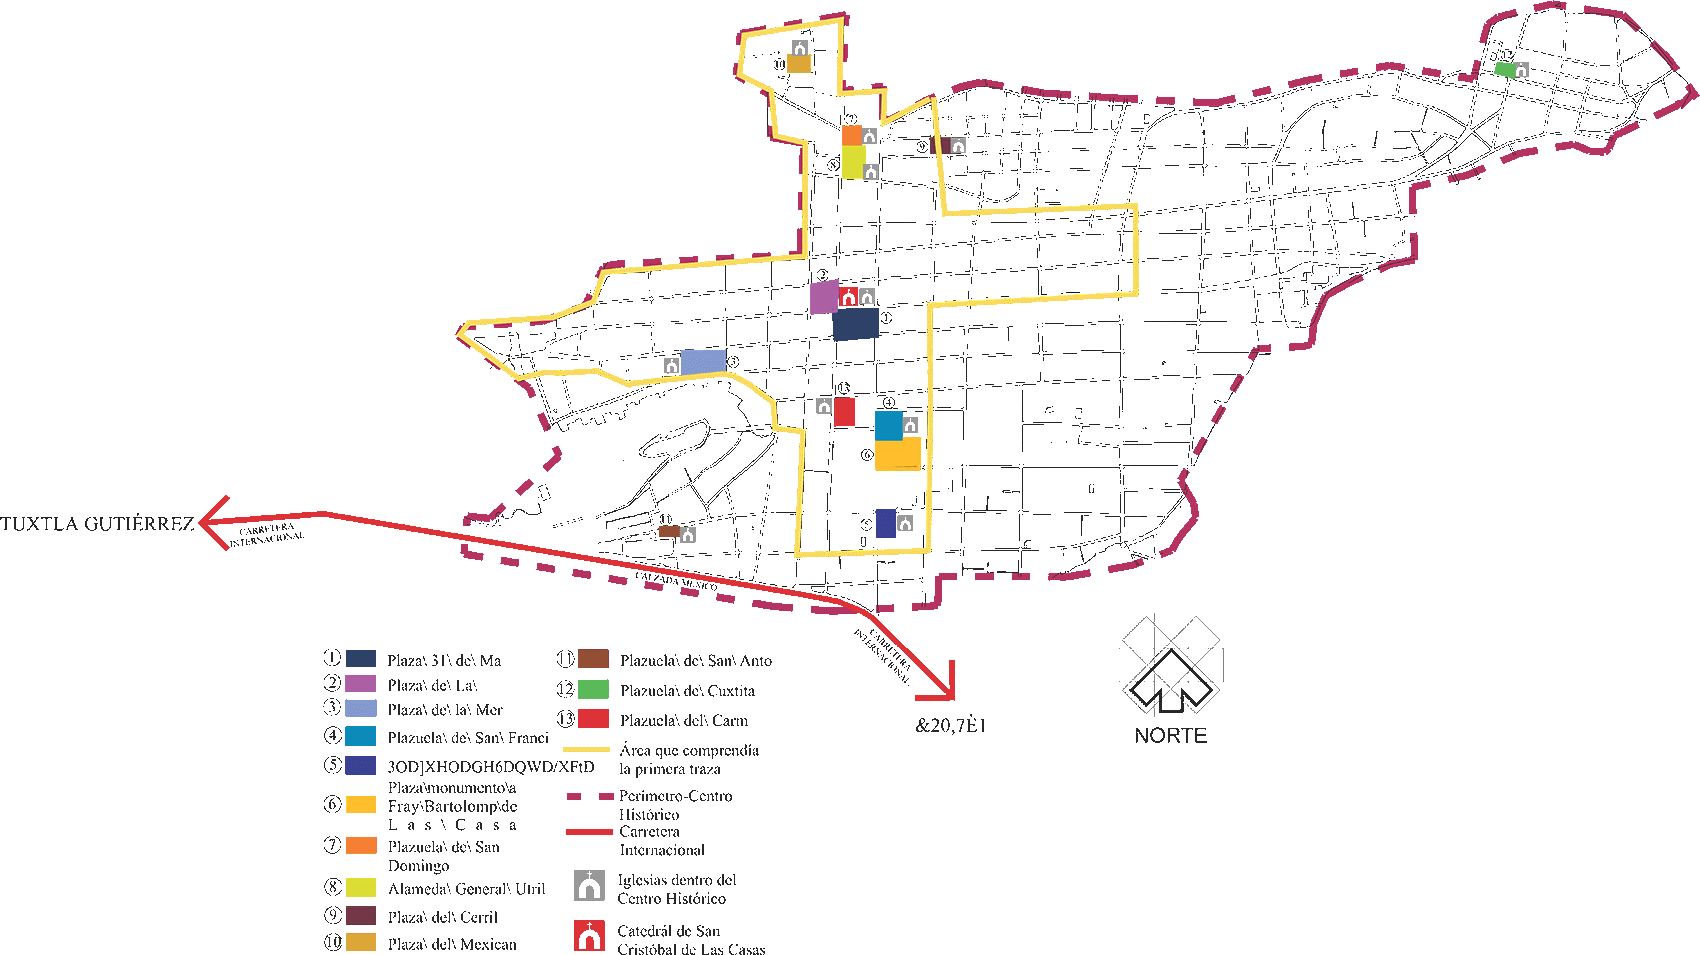 Una aproximación a las plazas actuales del Centro Histórico de San Cristóbal  de Las Casas, Chiapas / The current squares of the Historical Center in San  Cristóbal de Las Casas, Chiapas, an